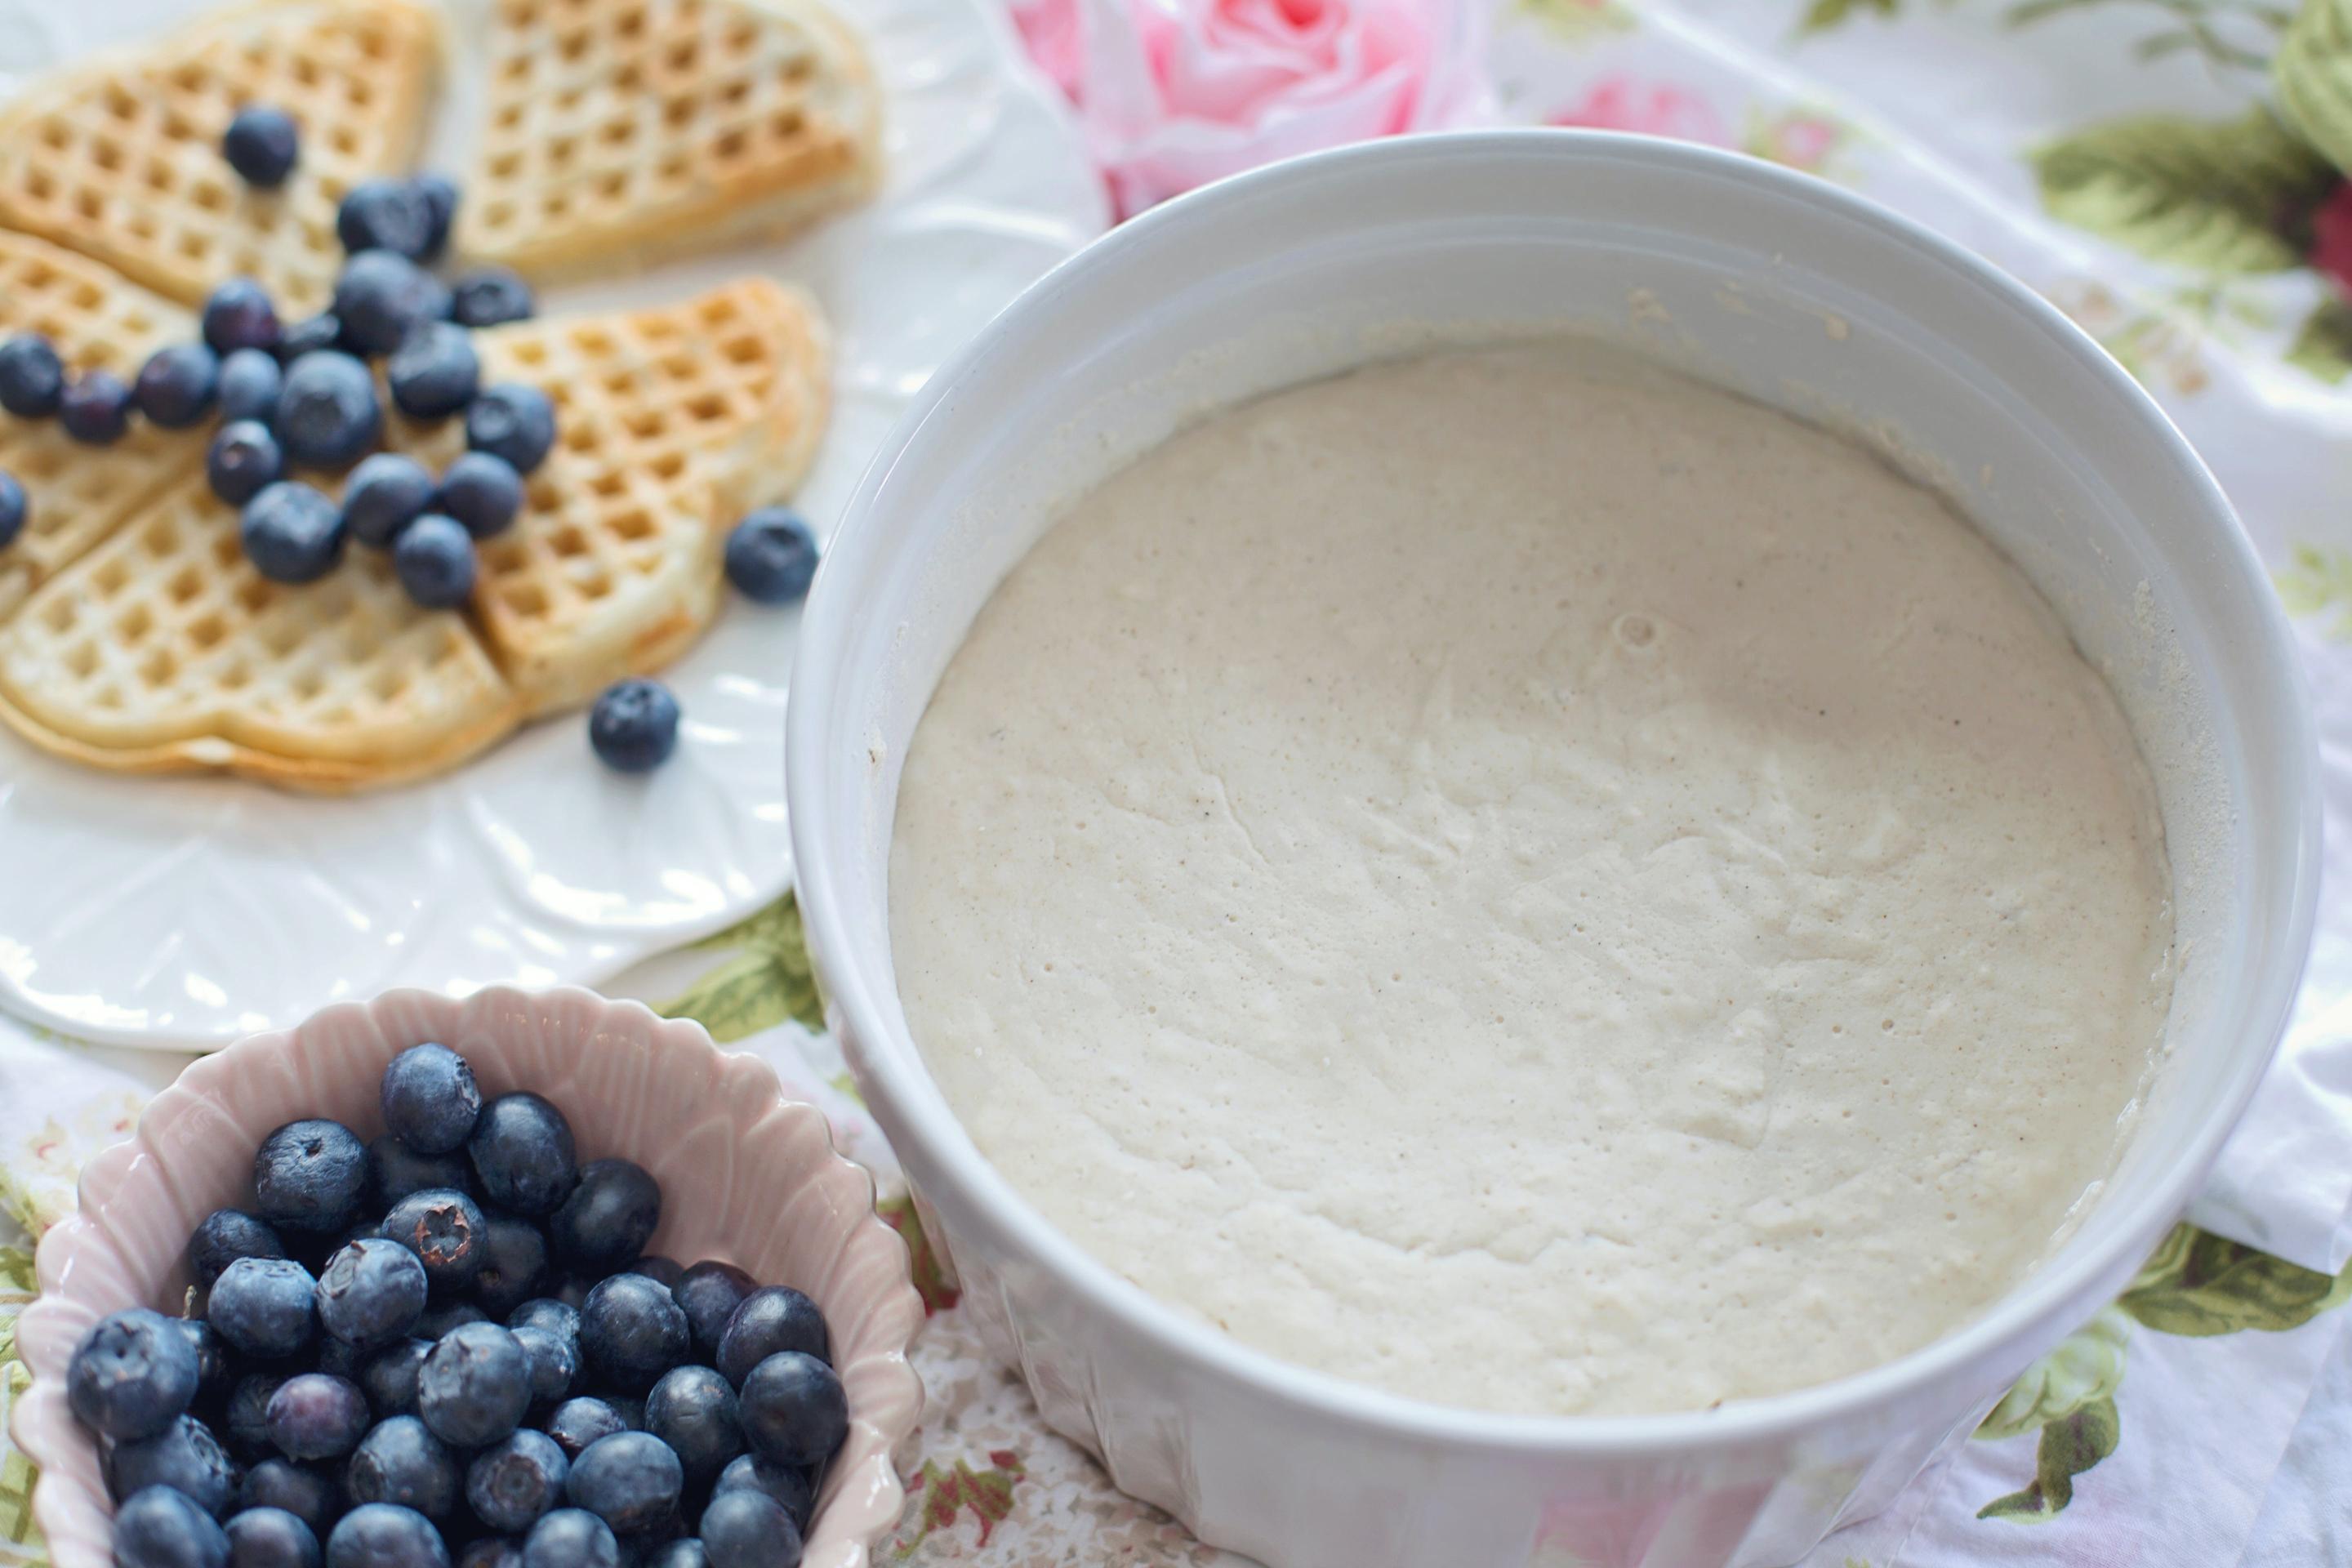 Ingredienti essenziali e attrezzature necessarie per preparare il gelato allo yogurt in casa